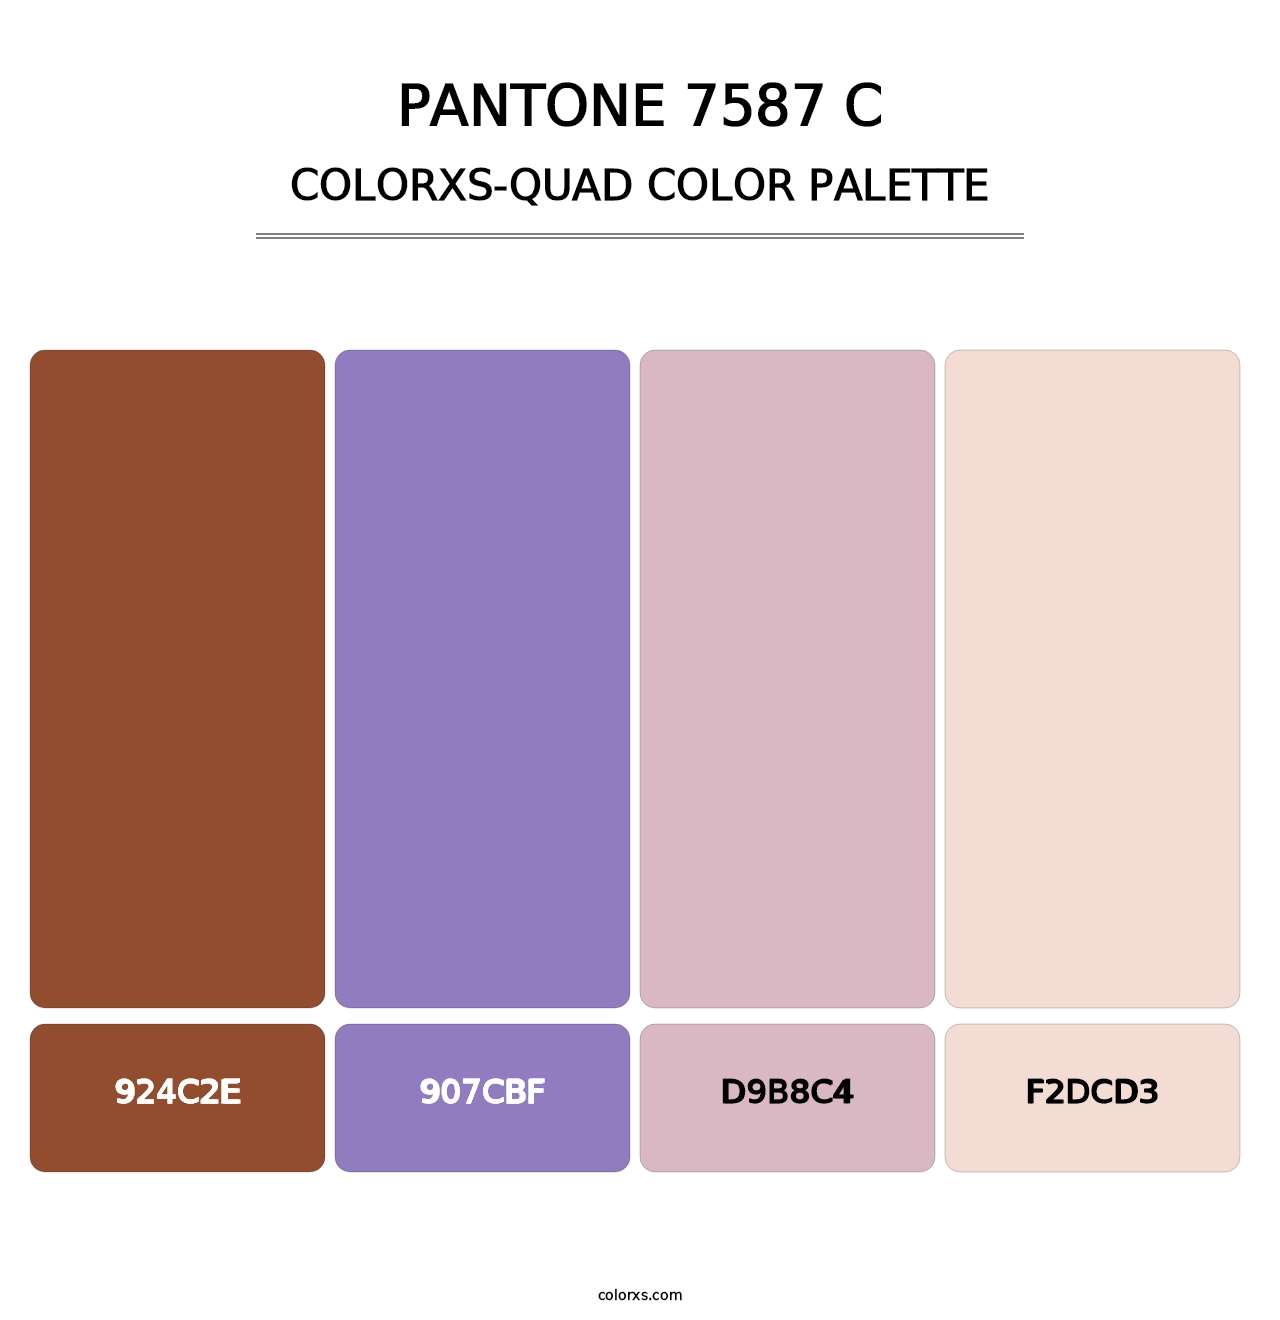 PANTONE 7587 C - Colorxs Quad Palette